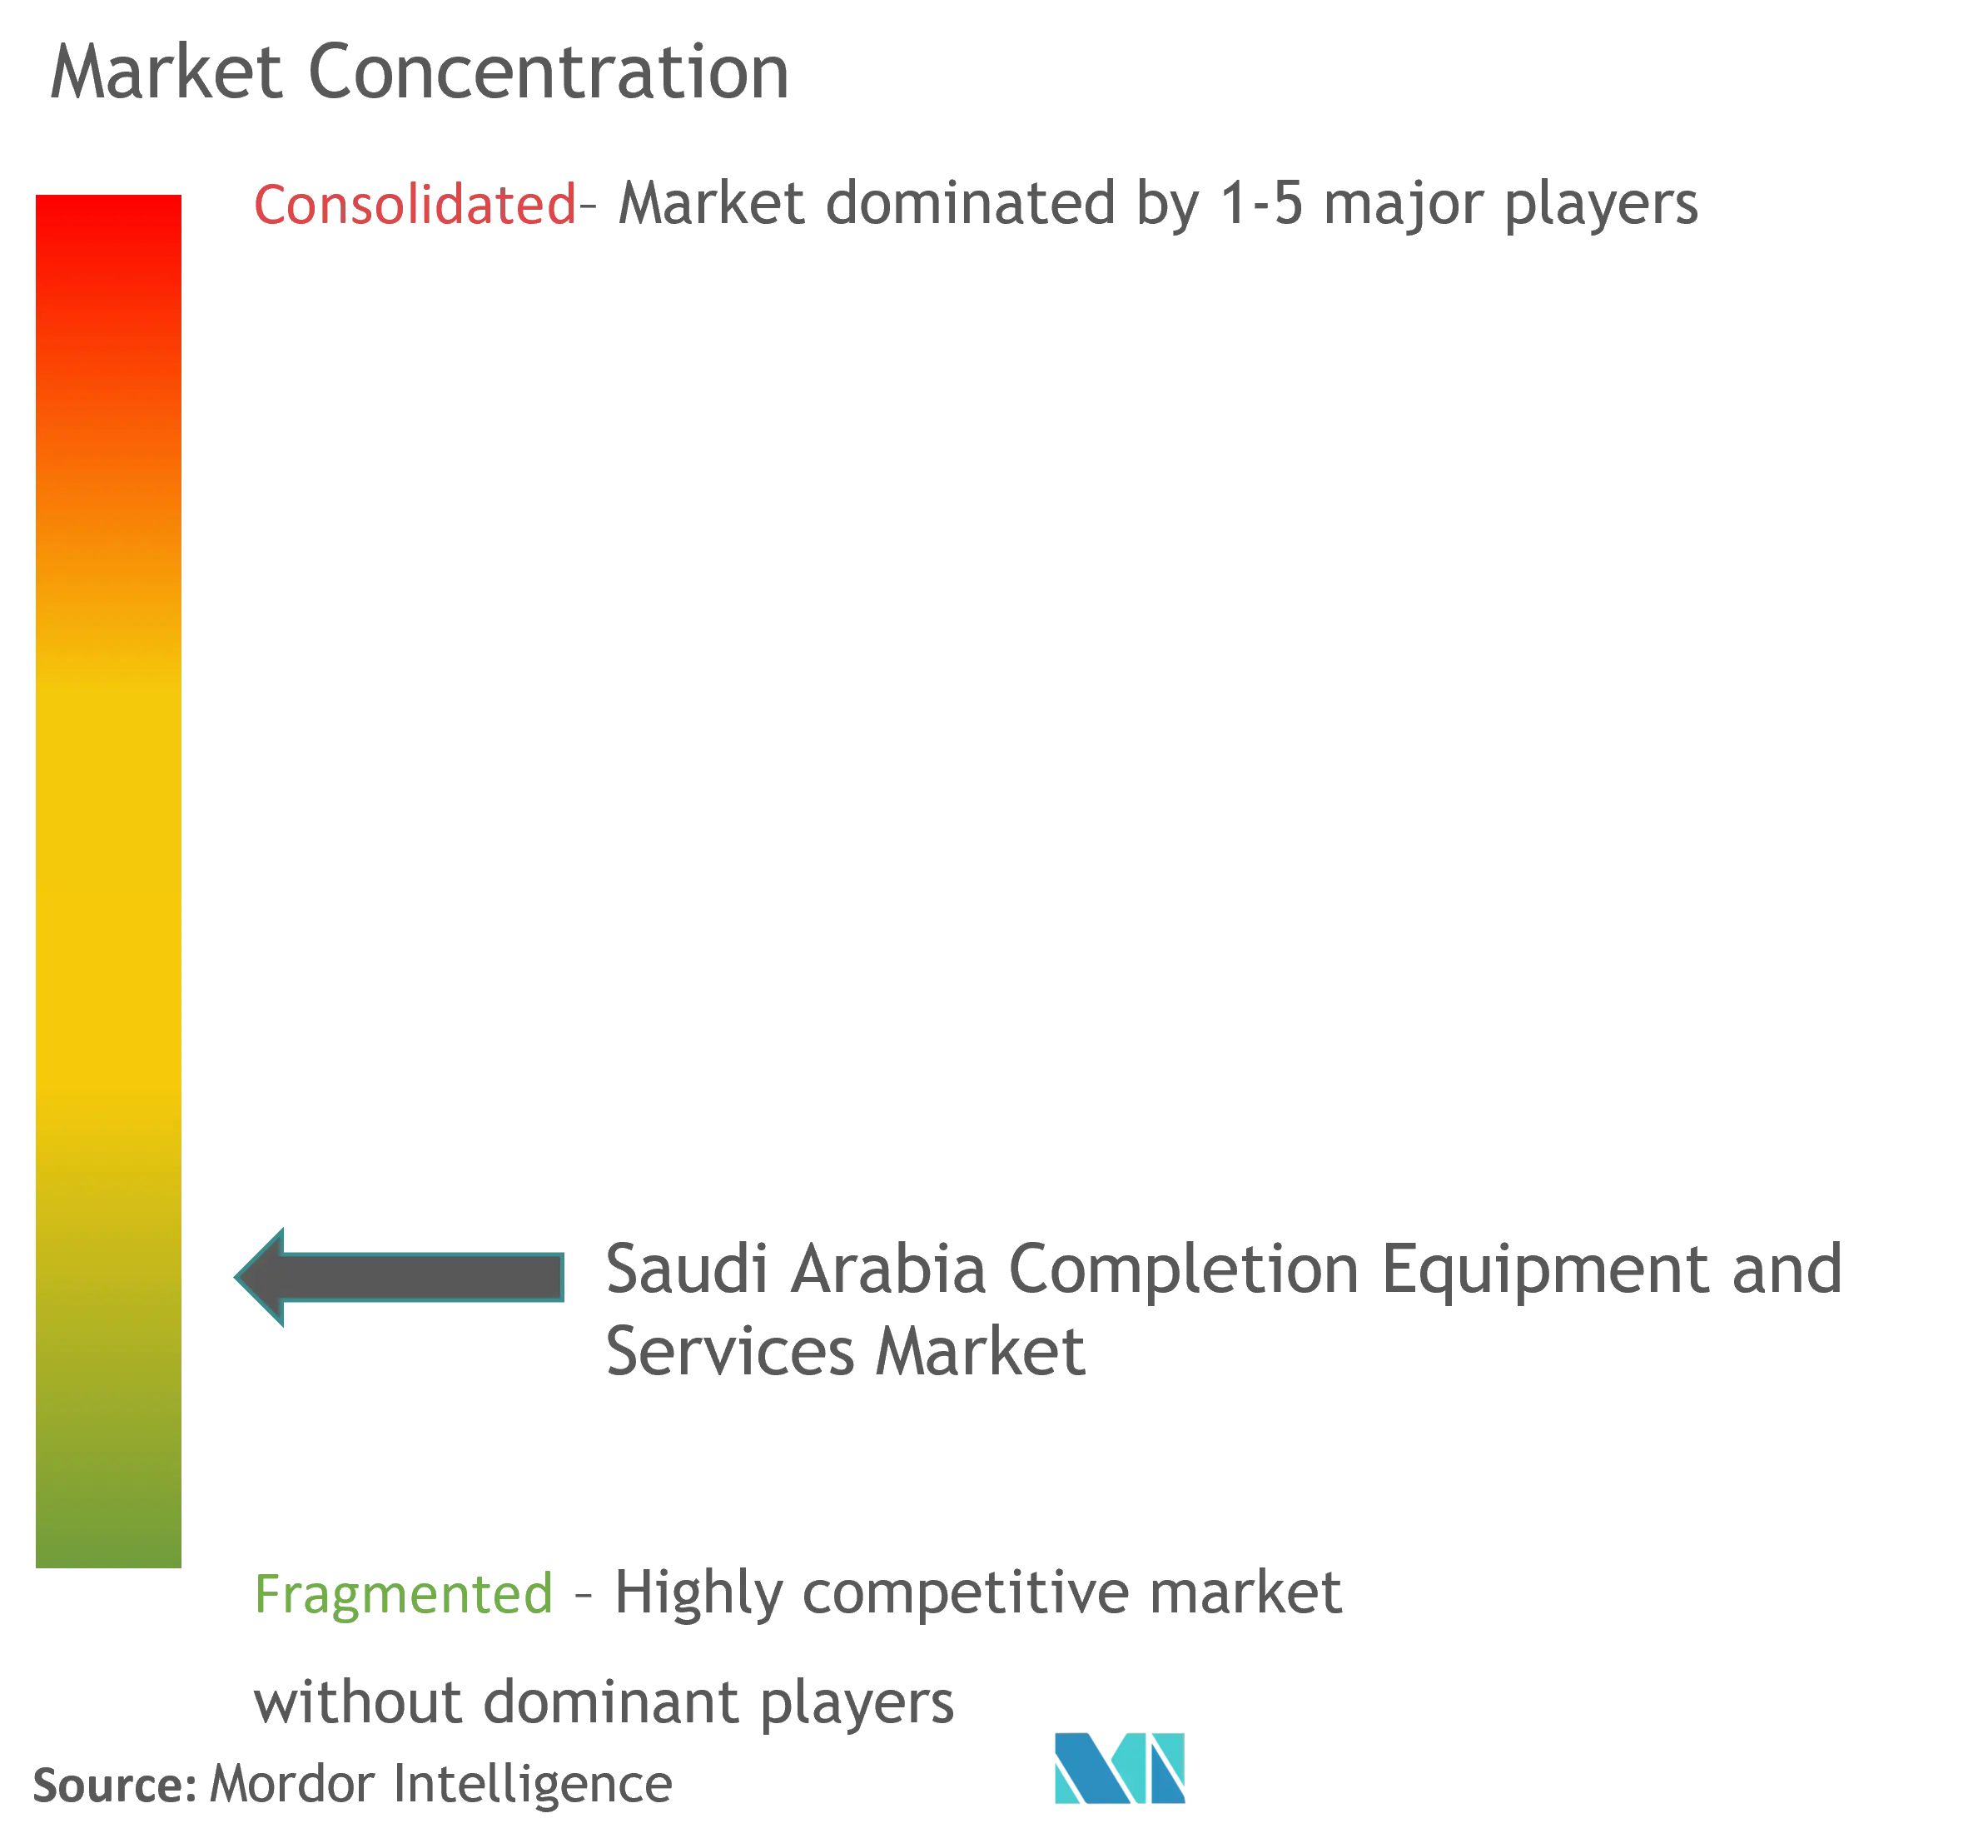 沙特阿拉伯完井设备和服务市场集中度